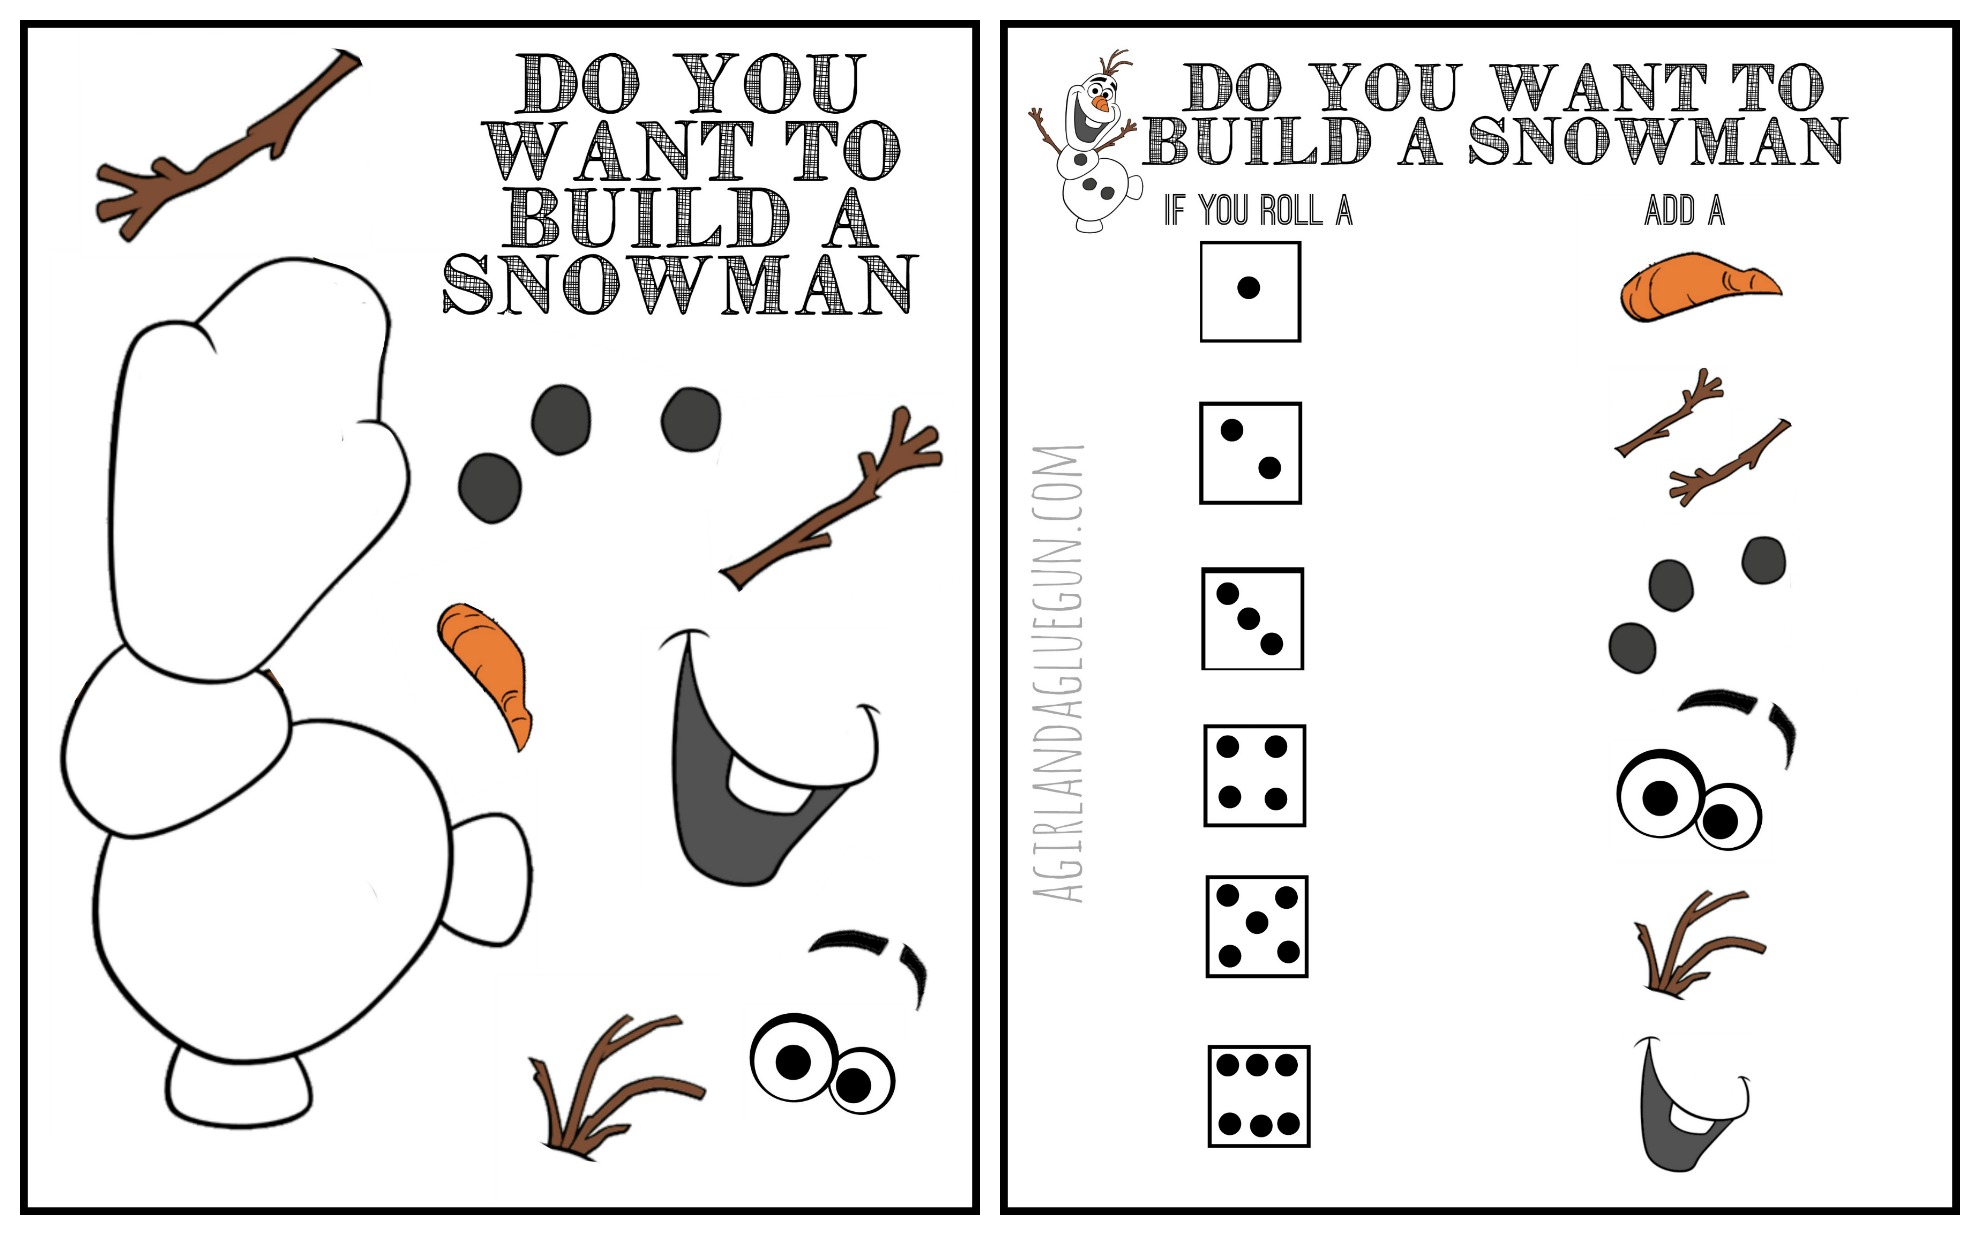 7-best-images-of-build-a-snowman-printable-printable-snowman-cut-out-disney-frozen-olaf-cut